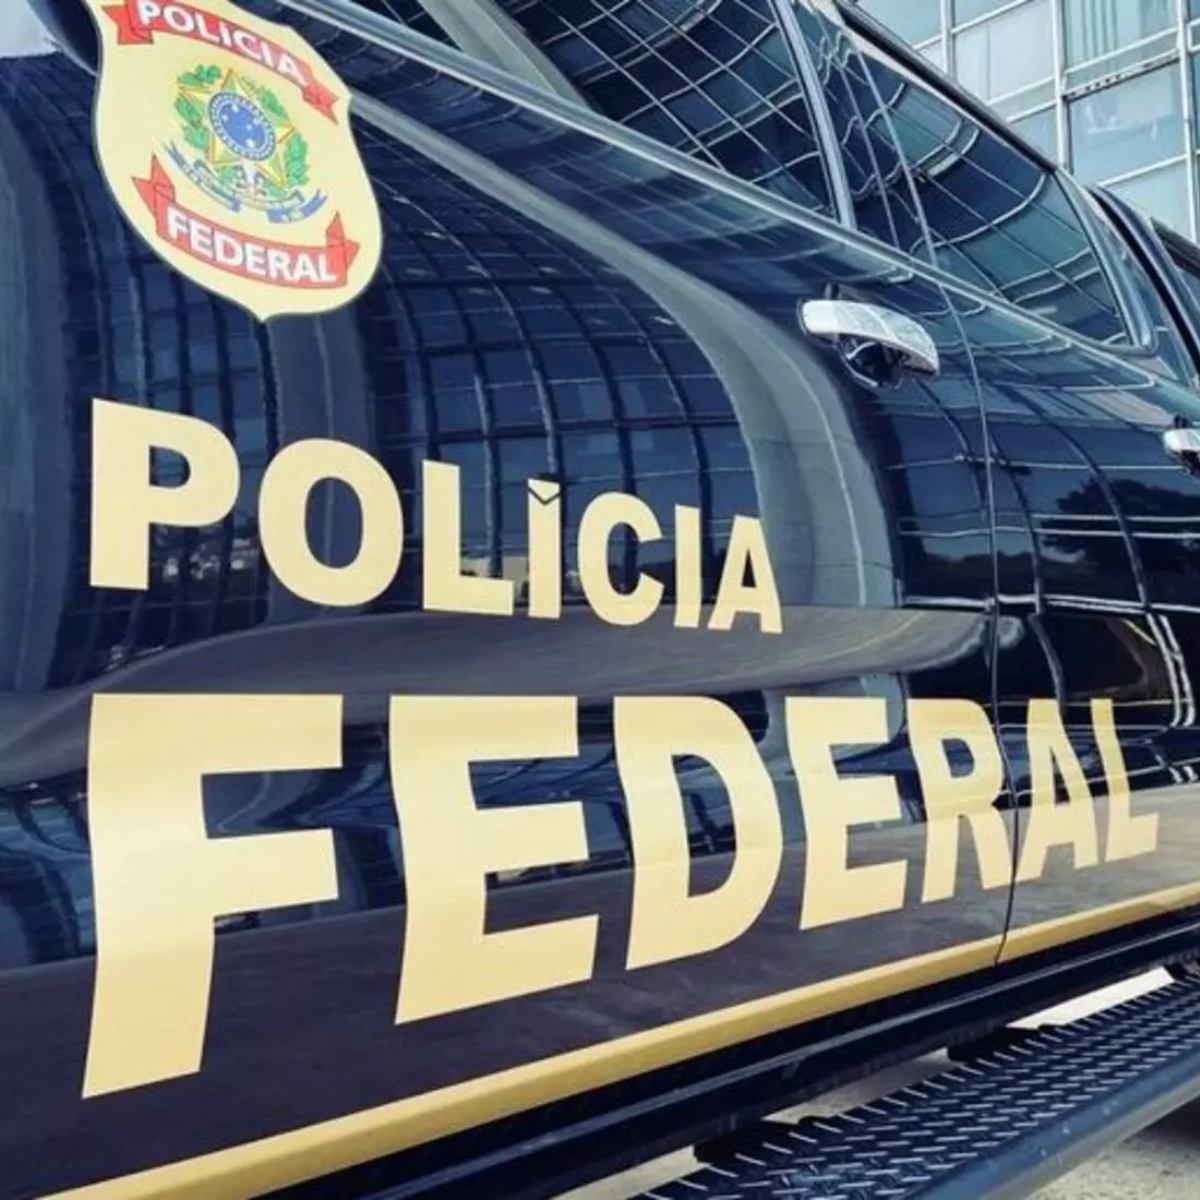  polícia federal londrina 